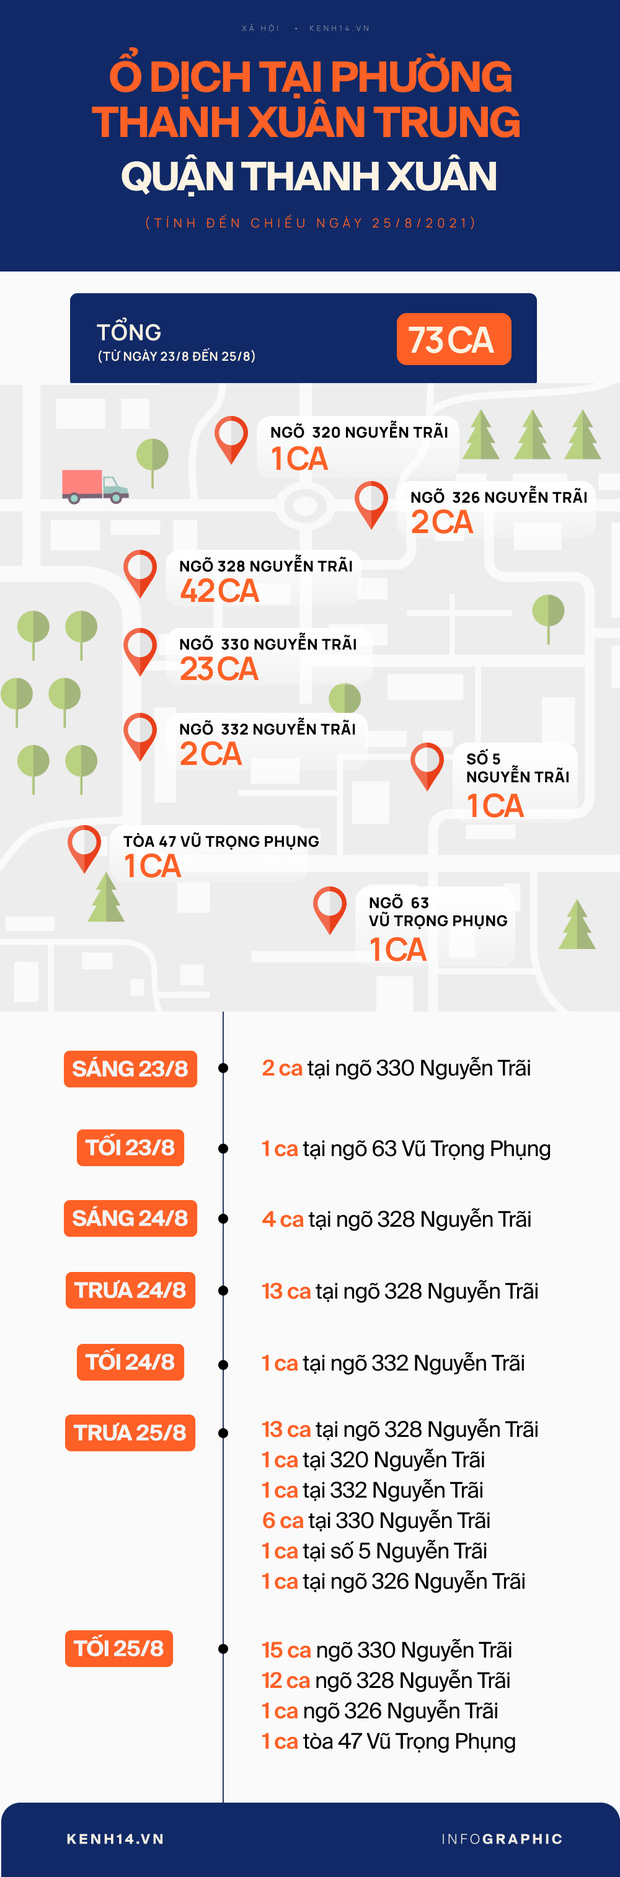 CDC Hà Nội: Ổ dịch 73 F0 tại phường Thanh Xuân Trung là khu dân cư cũ, mật độ đông, tỷ lệ lây nhiễm cao - Ảnh 3.